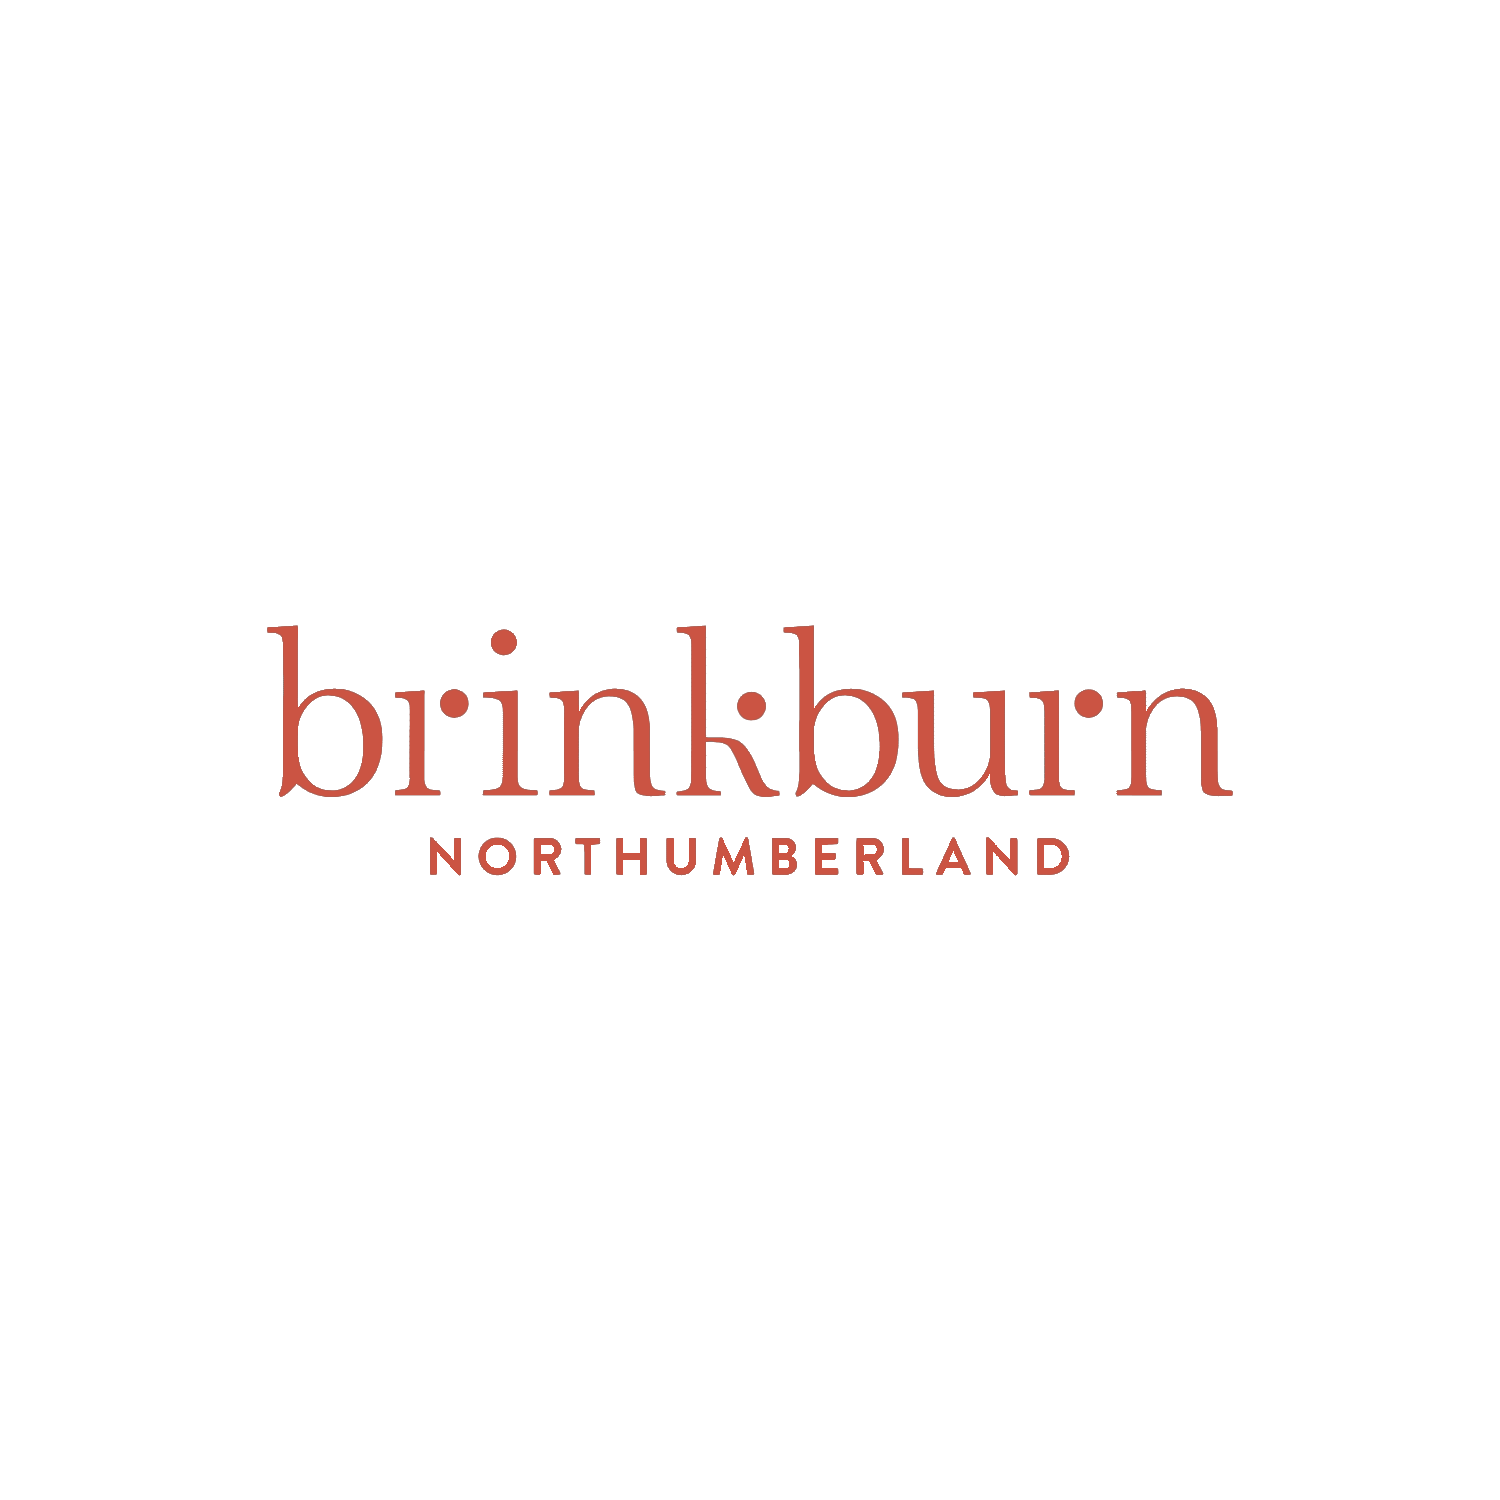 brinkburn logo red